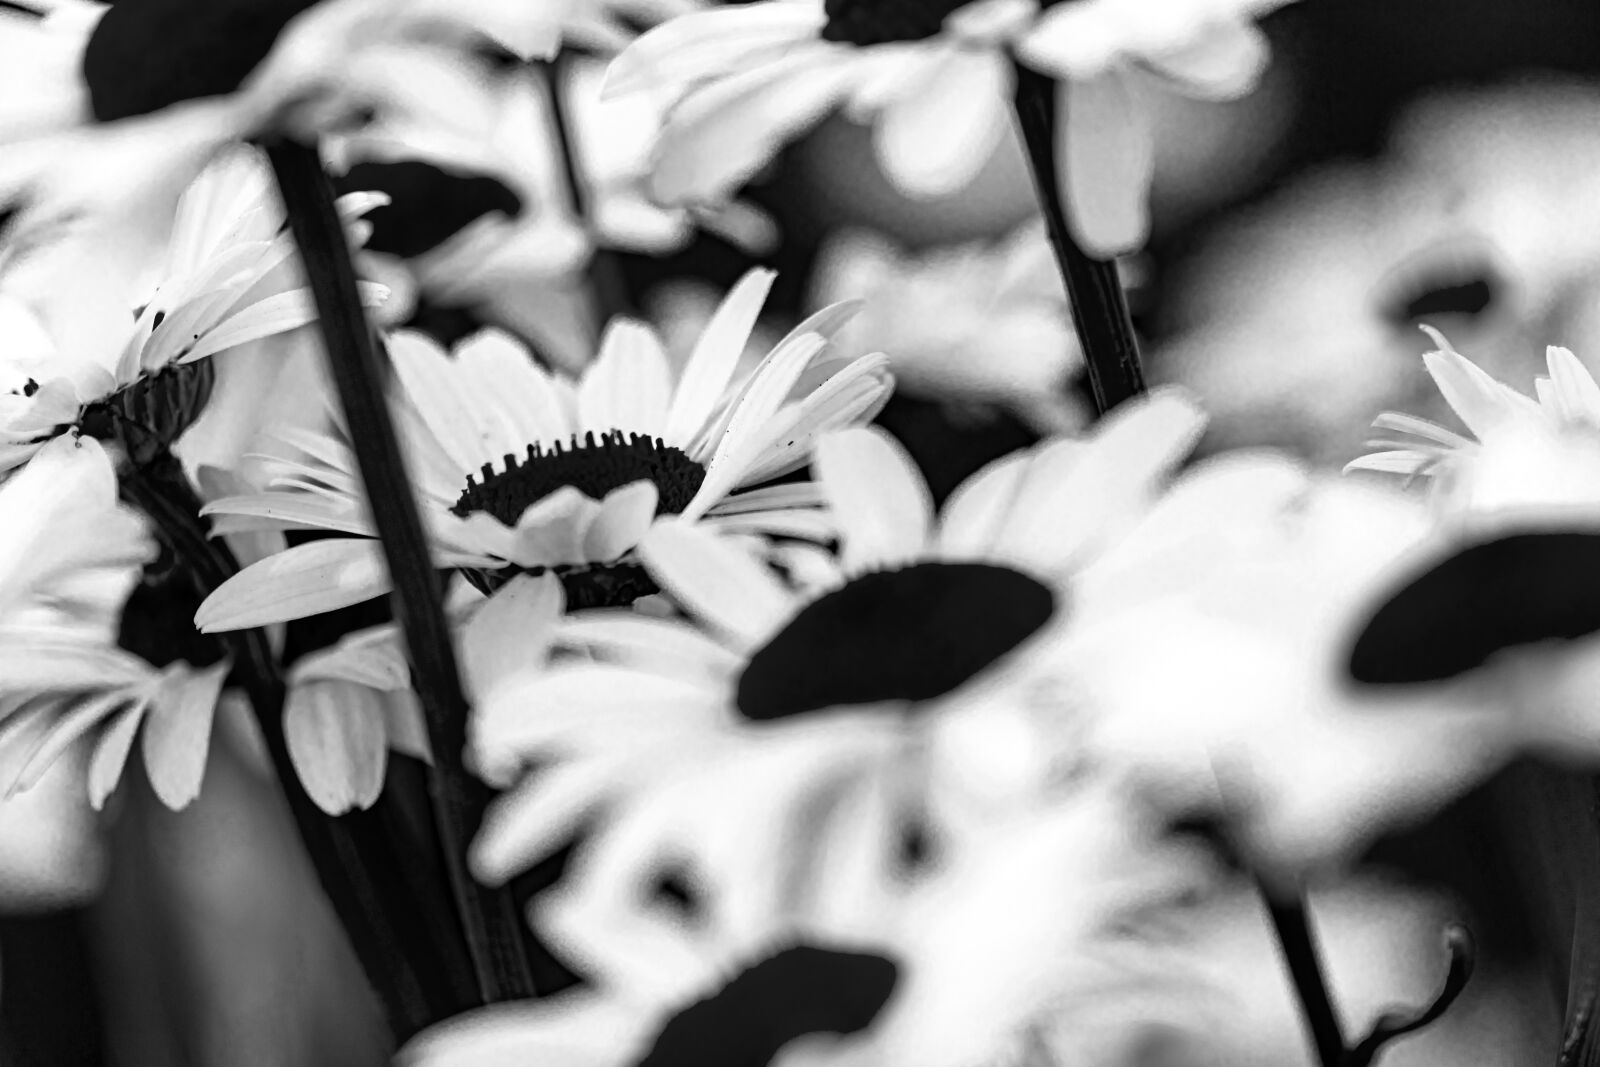 Canon EOS 5D Mark IV sample photo. Flower, daisy, plant photography